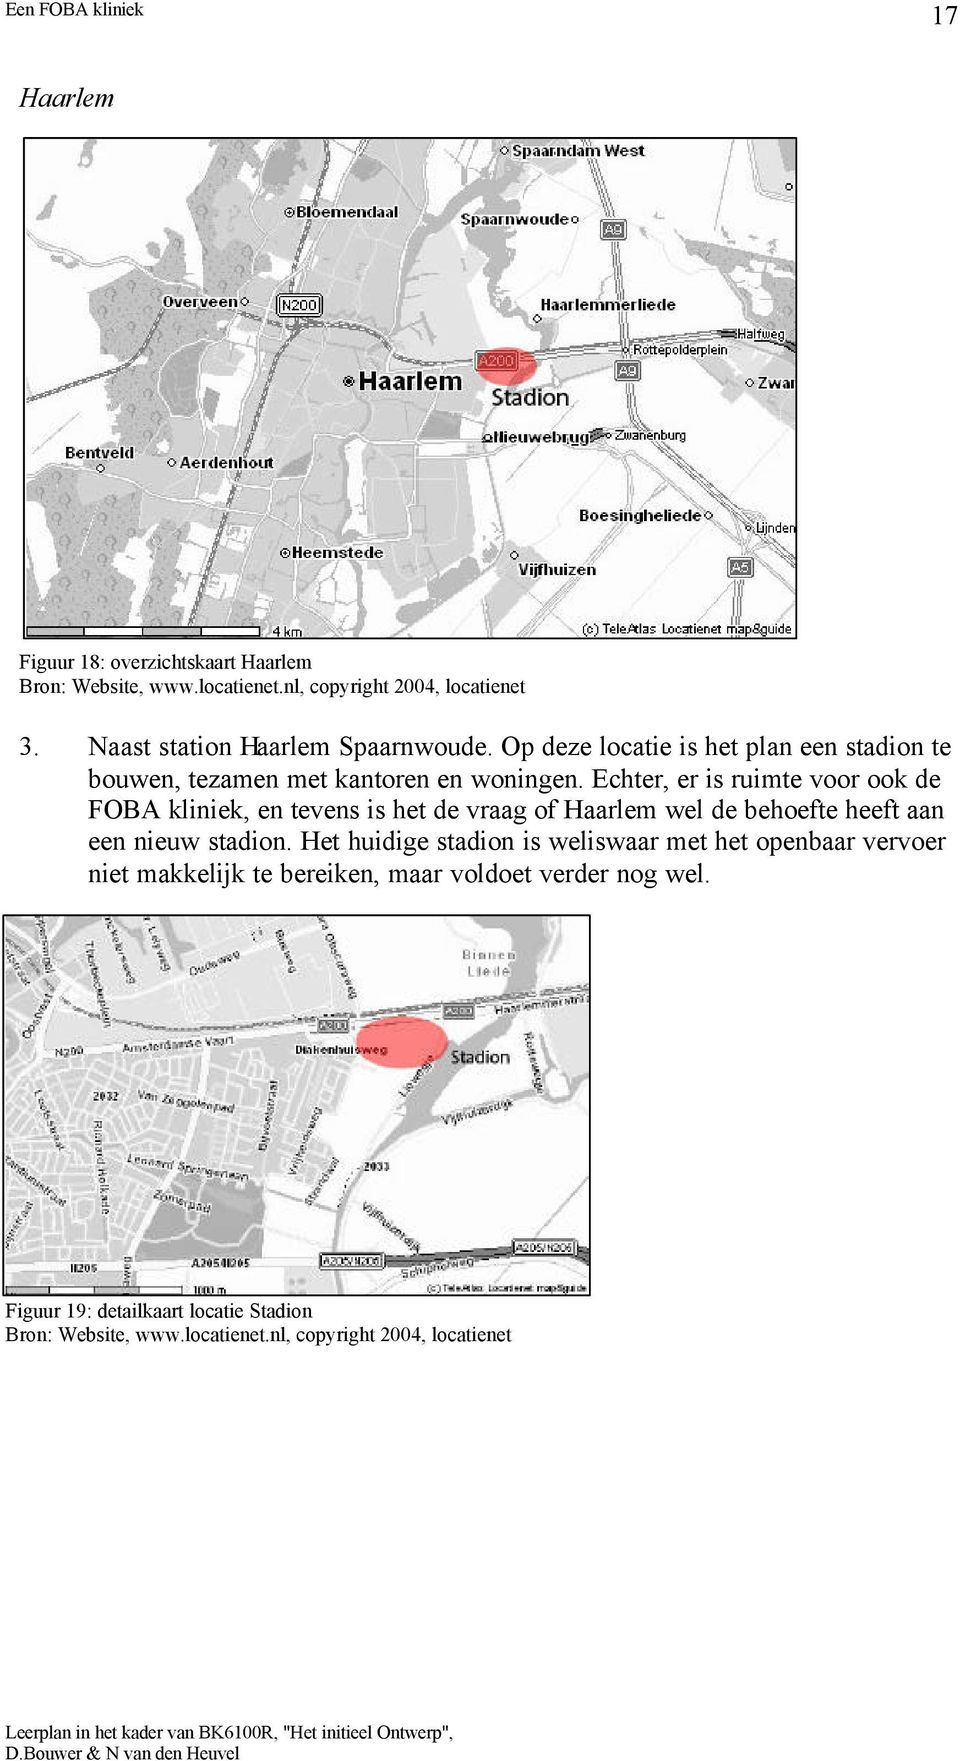 Echter, er is ruimte voor ook de FOBA kliniek, en tevens is het de vraag of Haarlem wel de behoefte heeft aan een nieuw stadion.